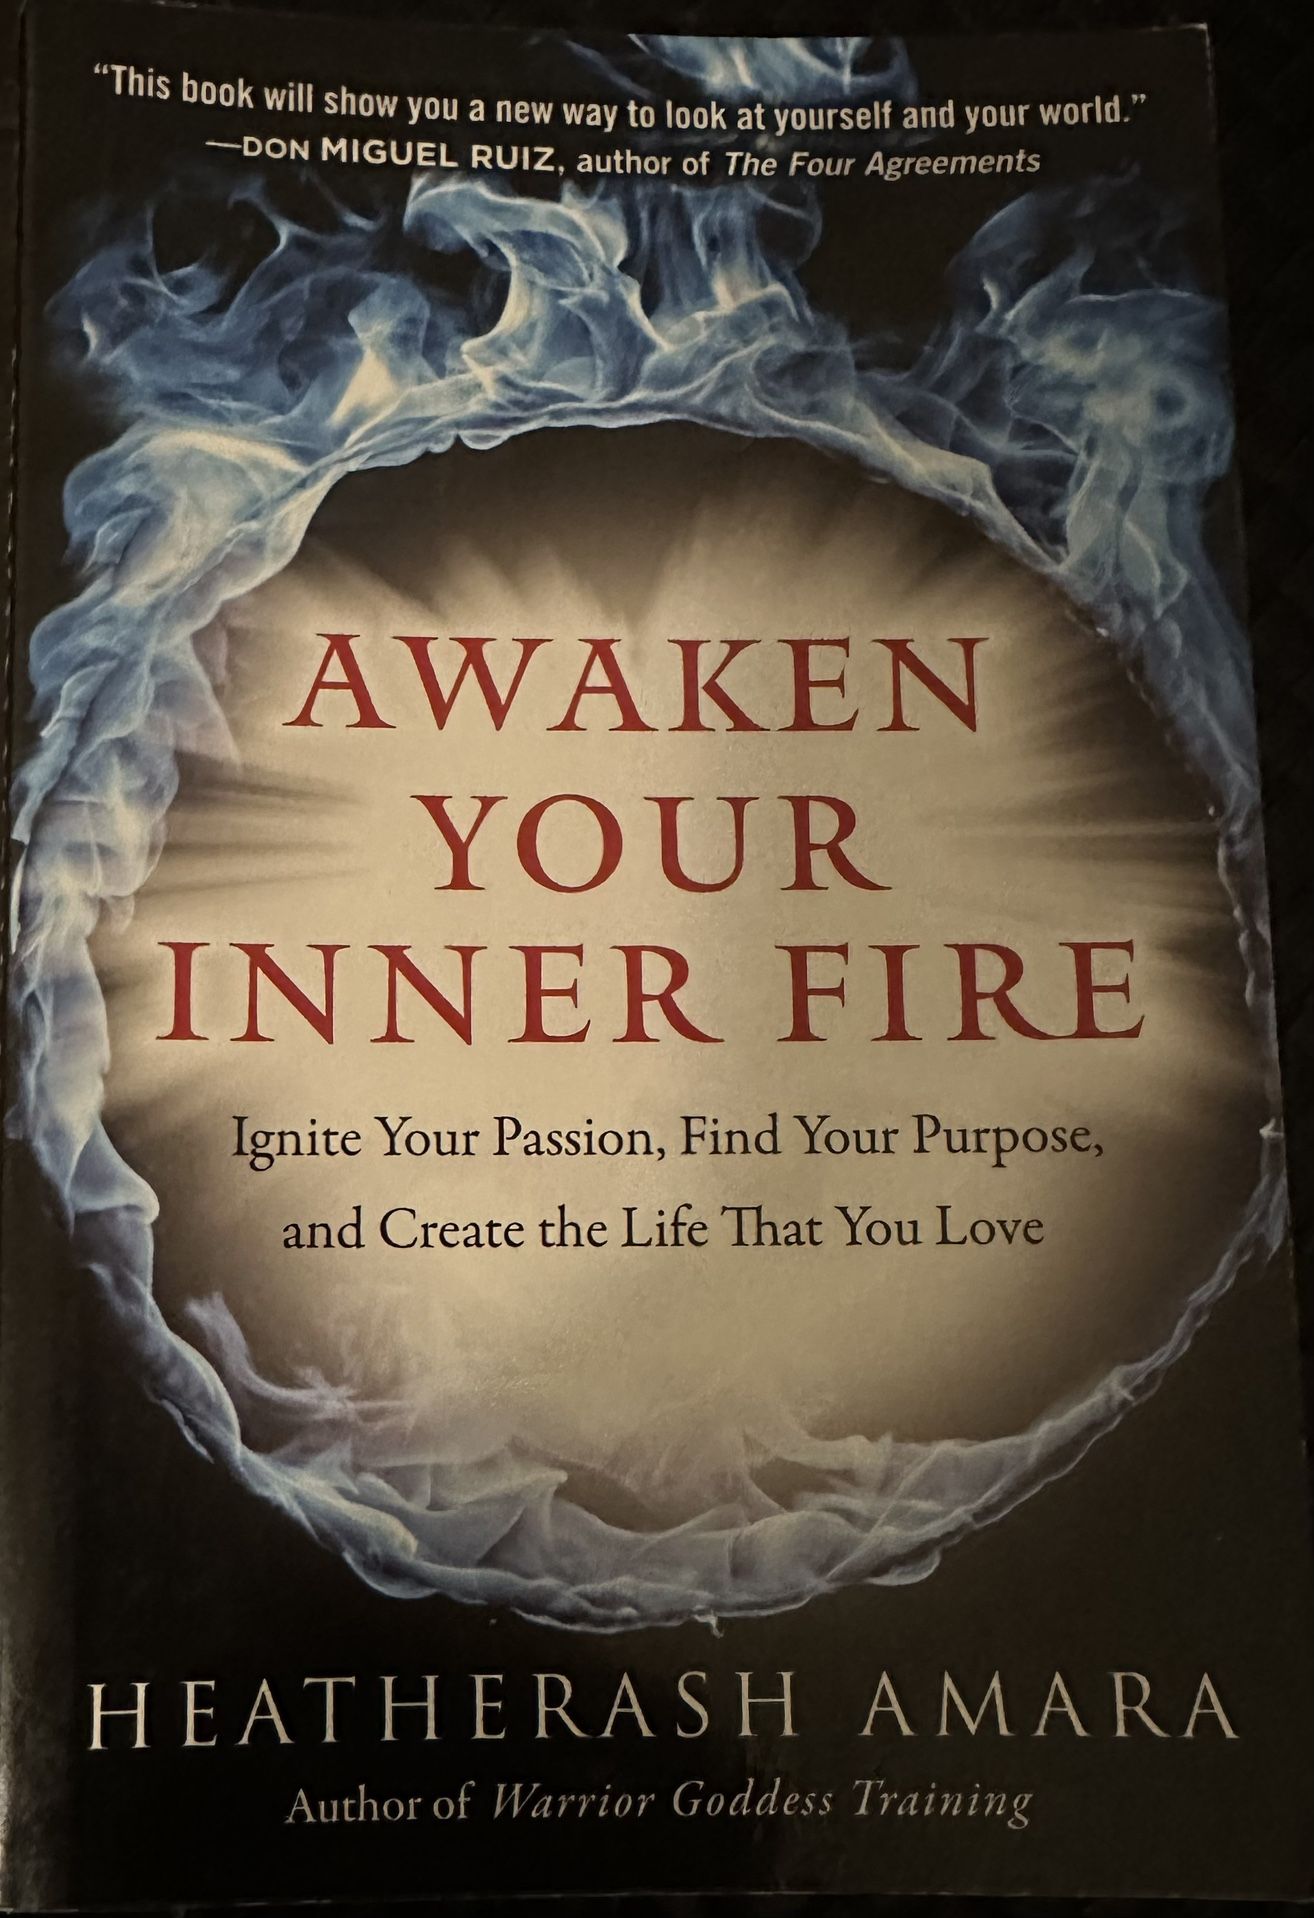 Awaken Your Inner Fire